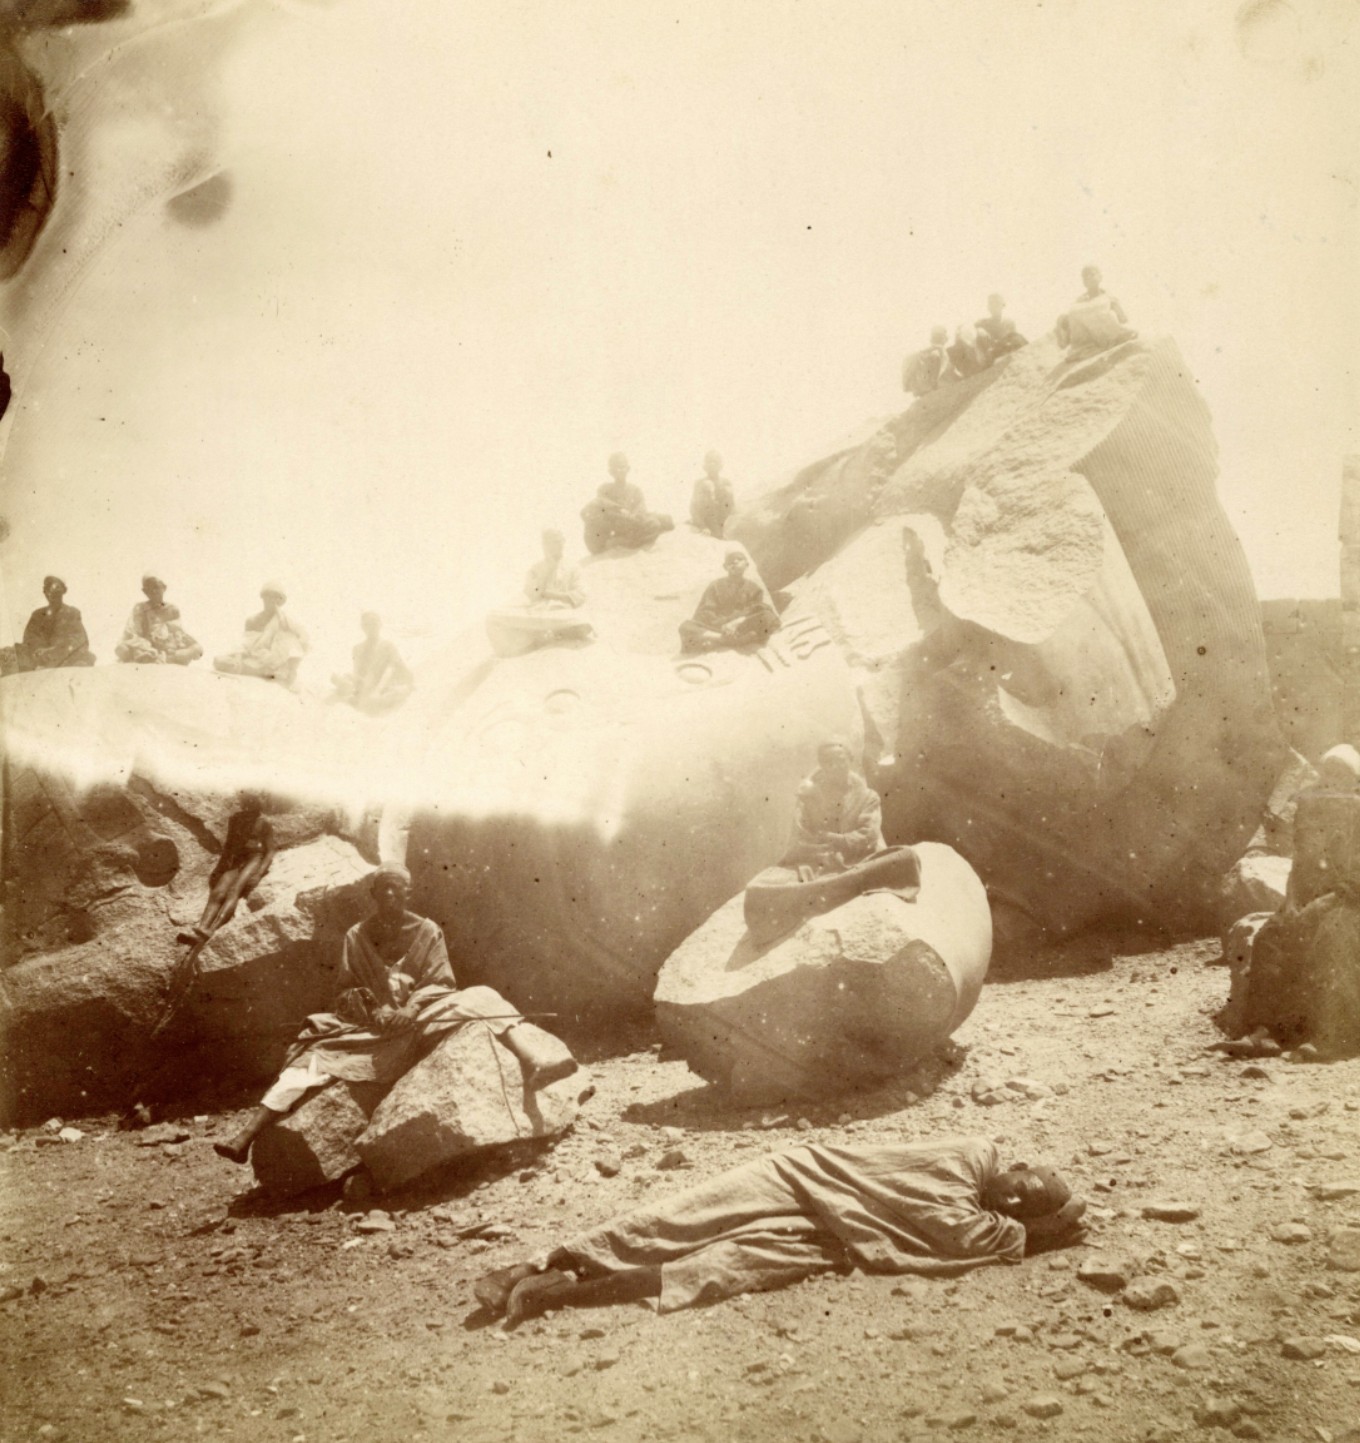 Le colosse de Ramsès II (première cour) vers 1860 - anonyme